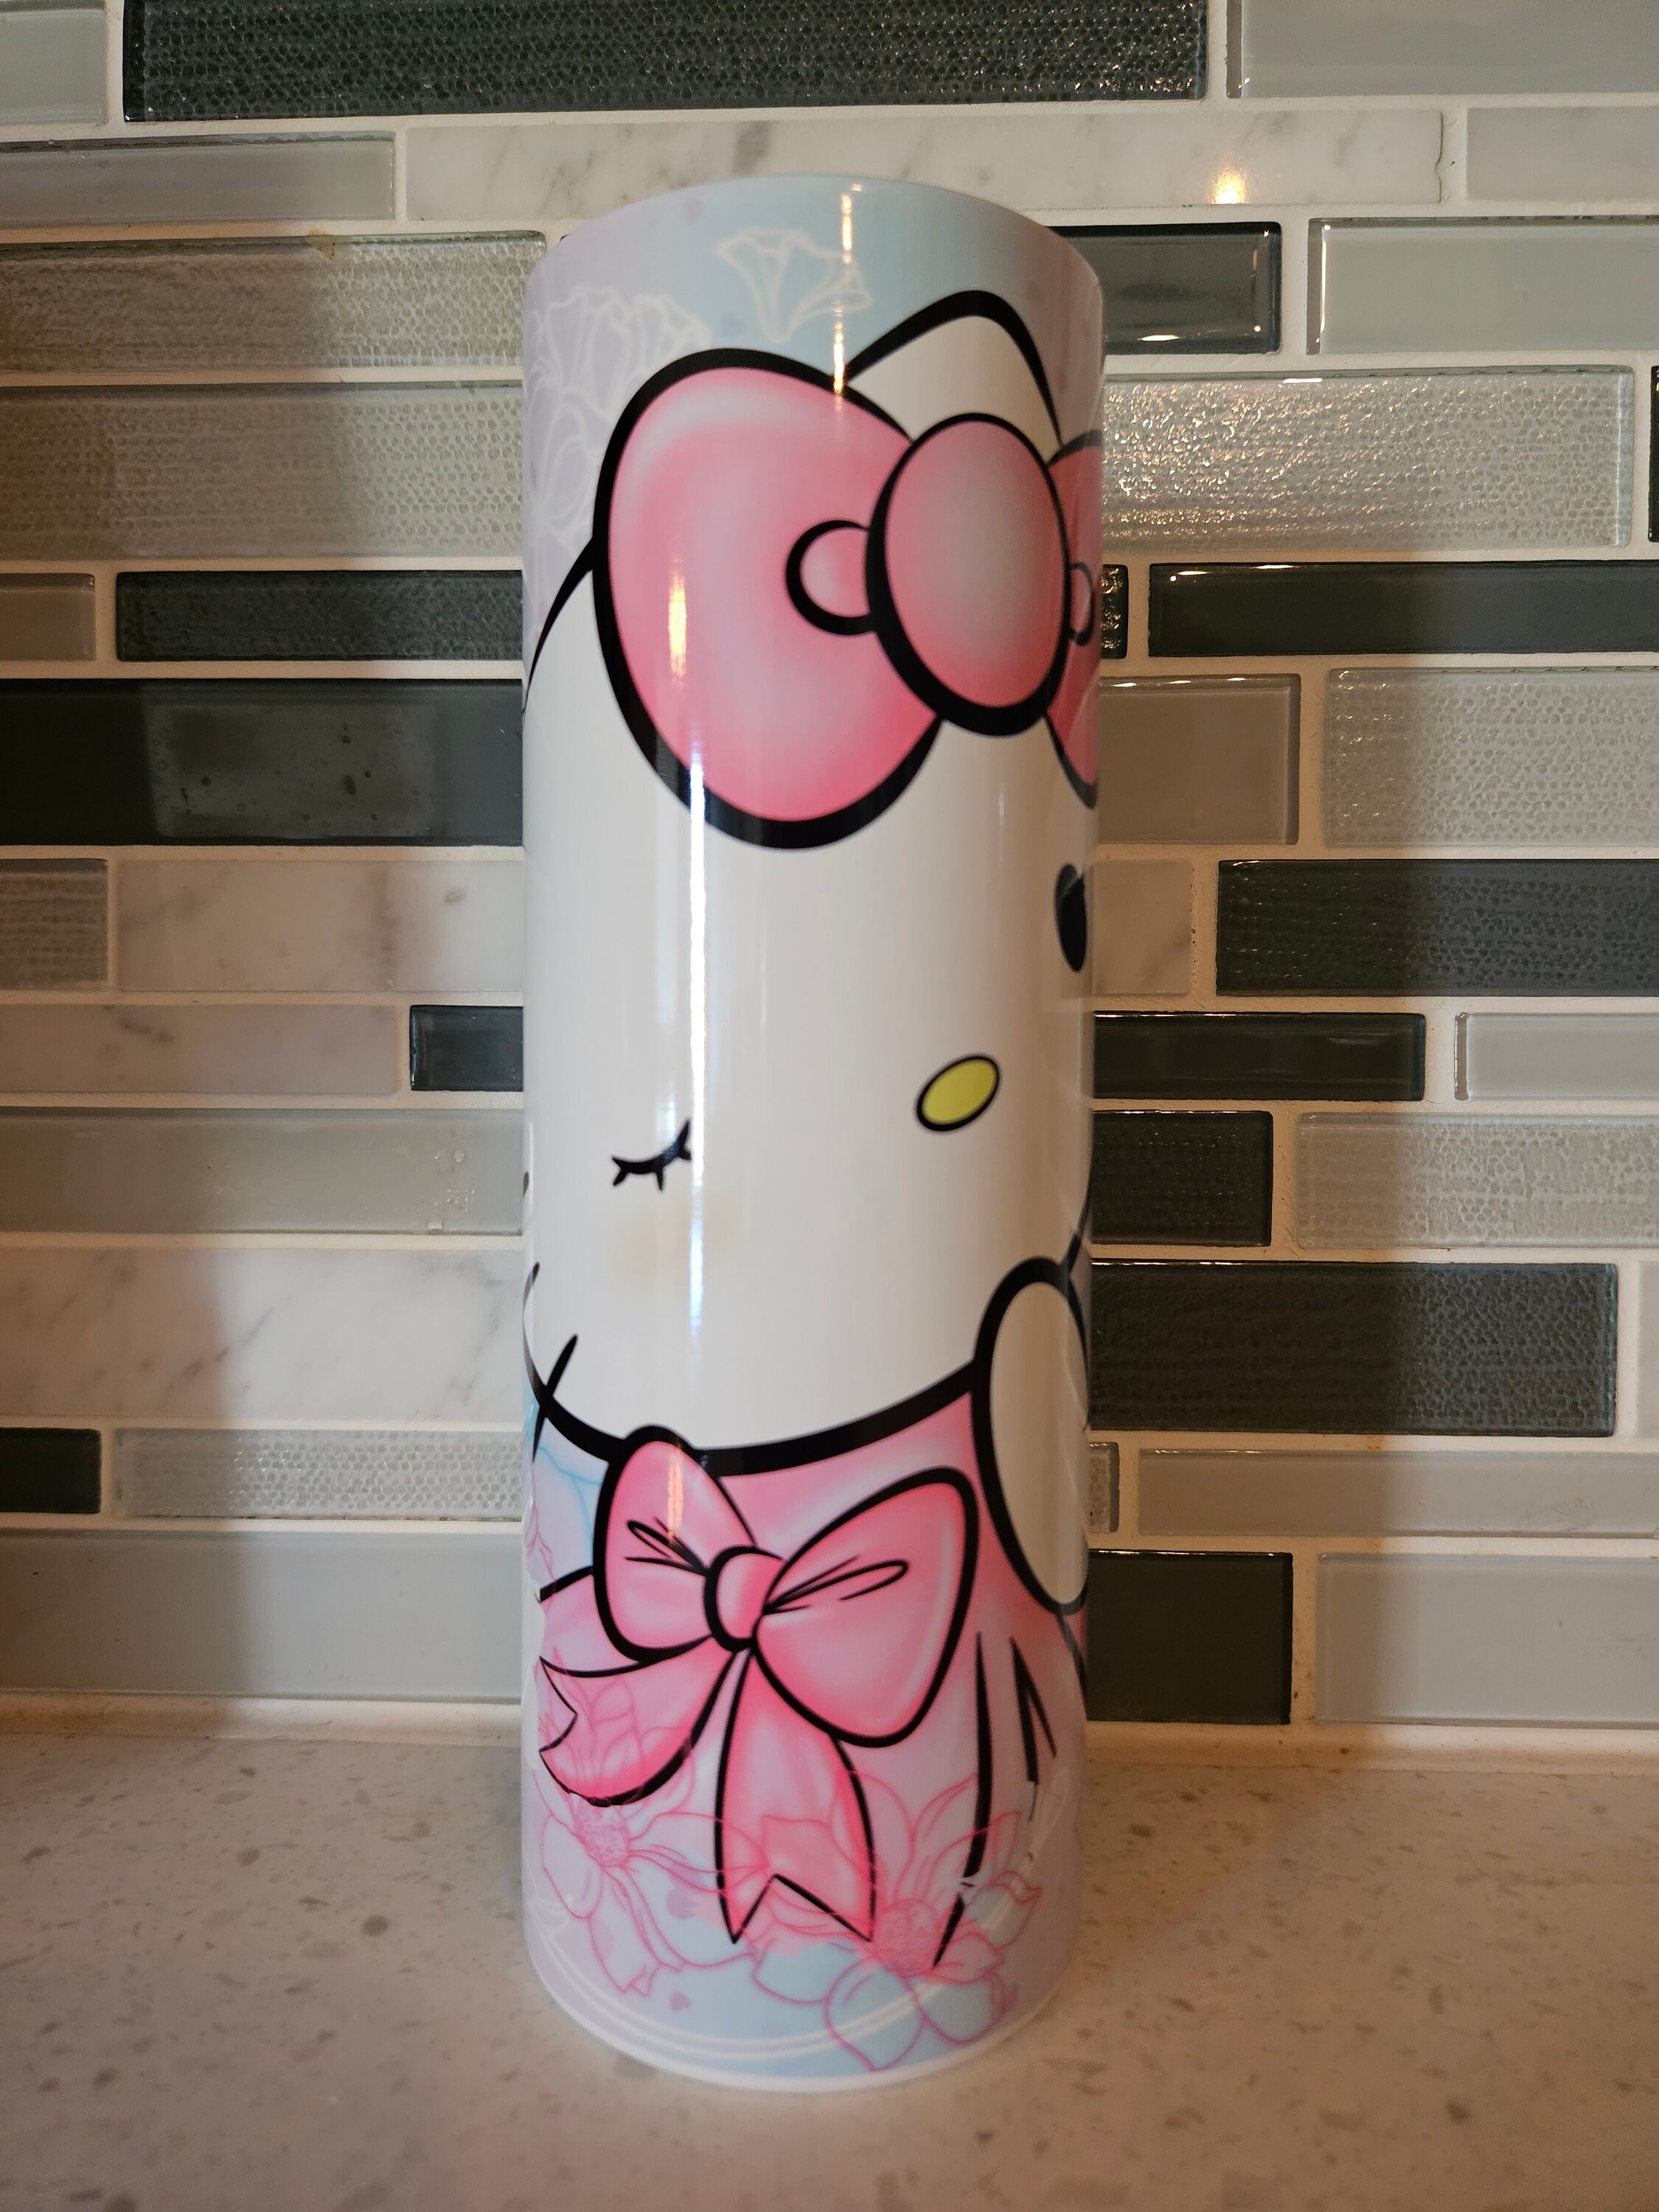 Hello Kitty By Sanrio White Polka Dot Pink Double Wall Tumbler w